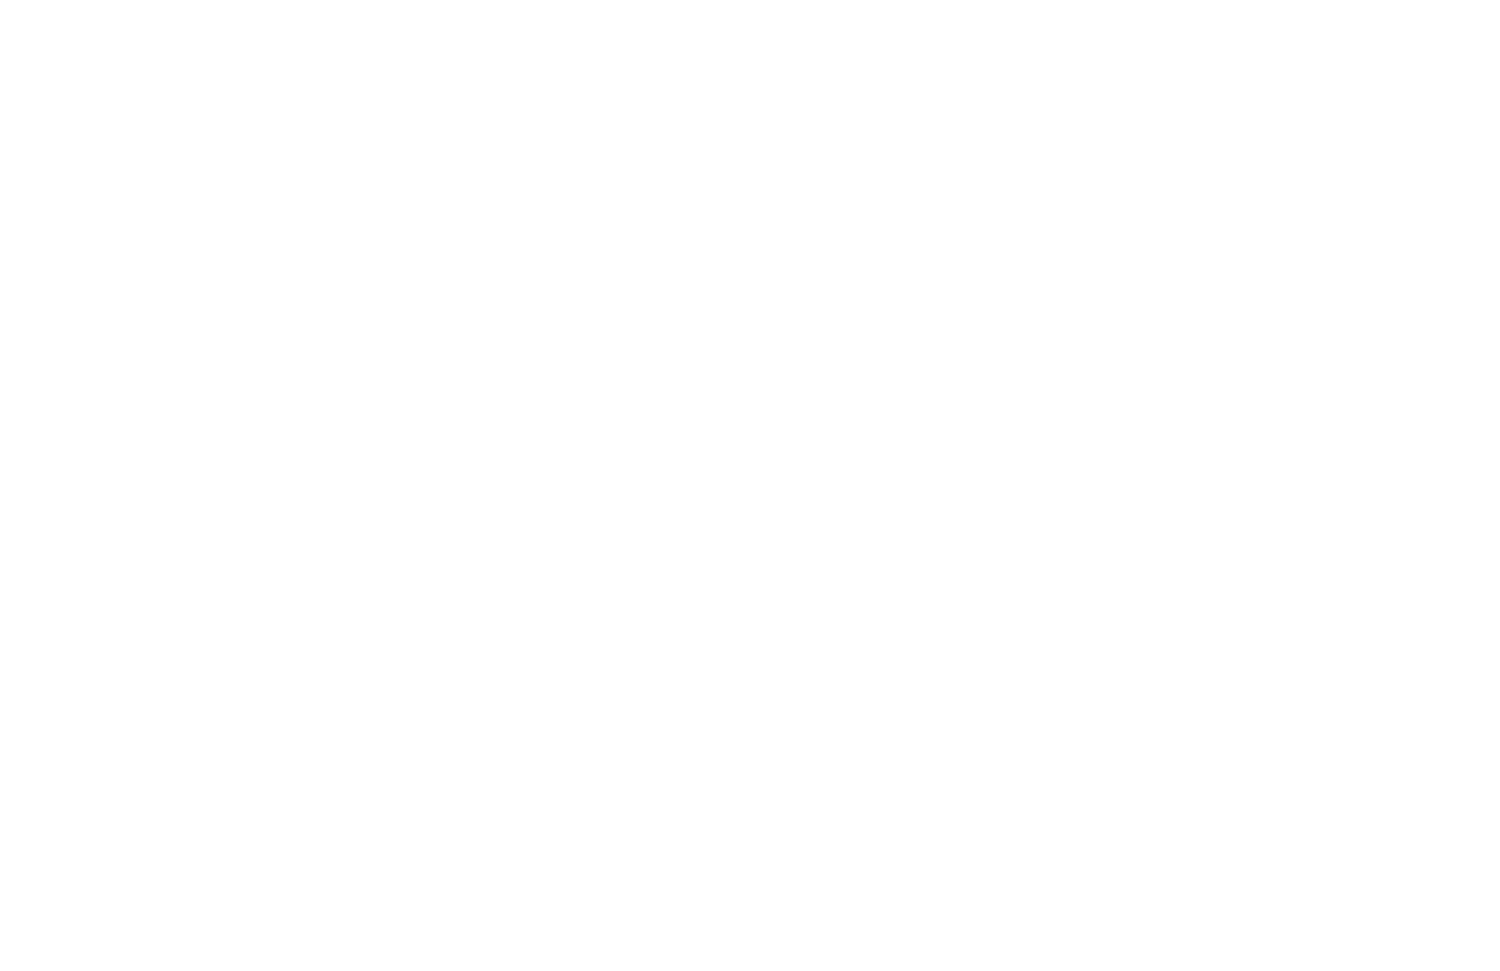 The Ship Weybridge